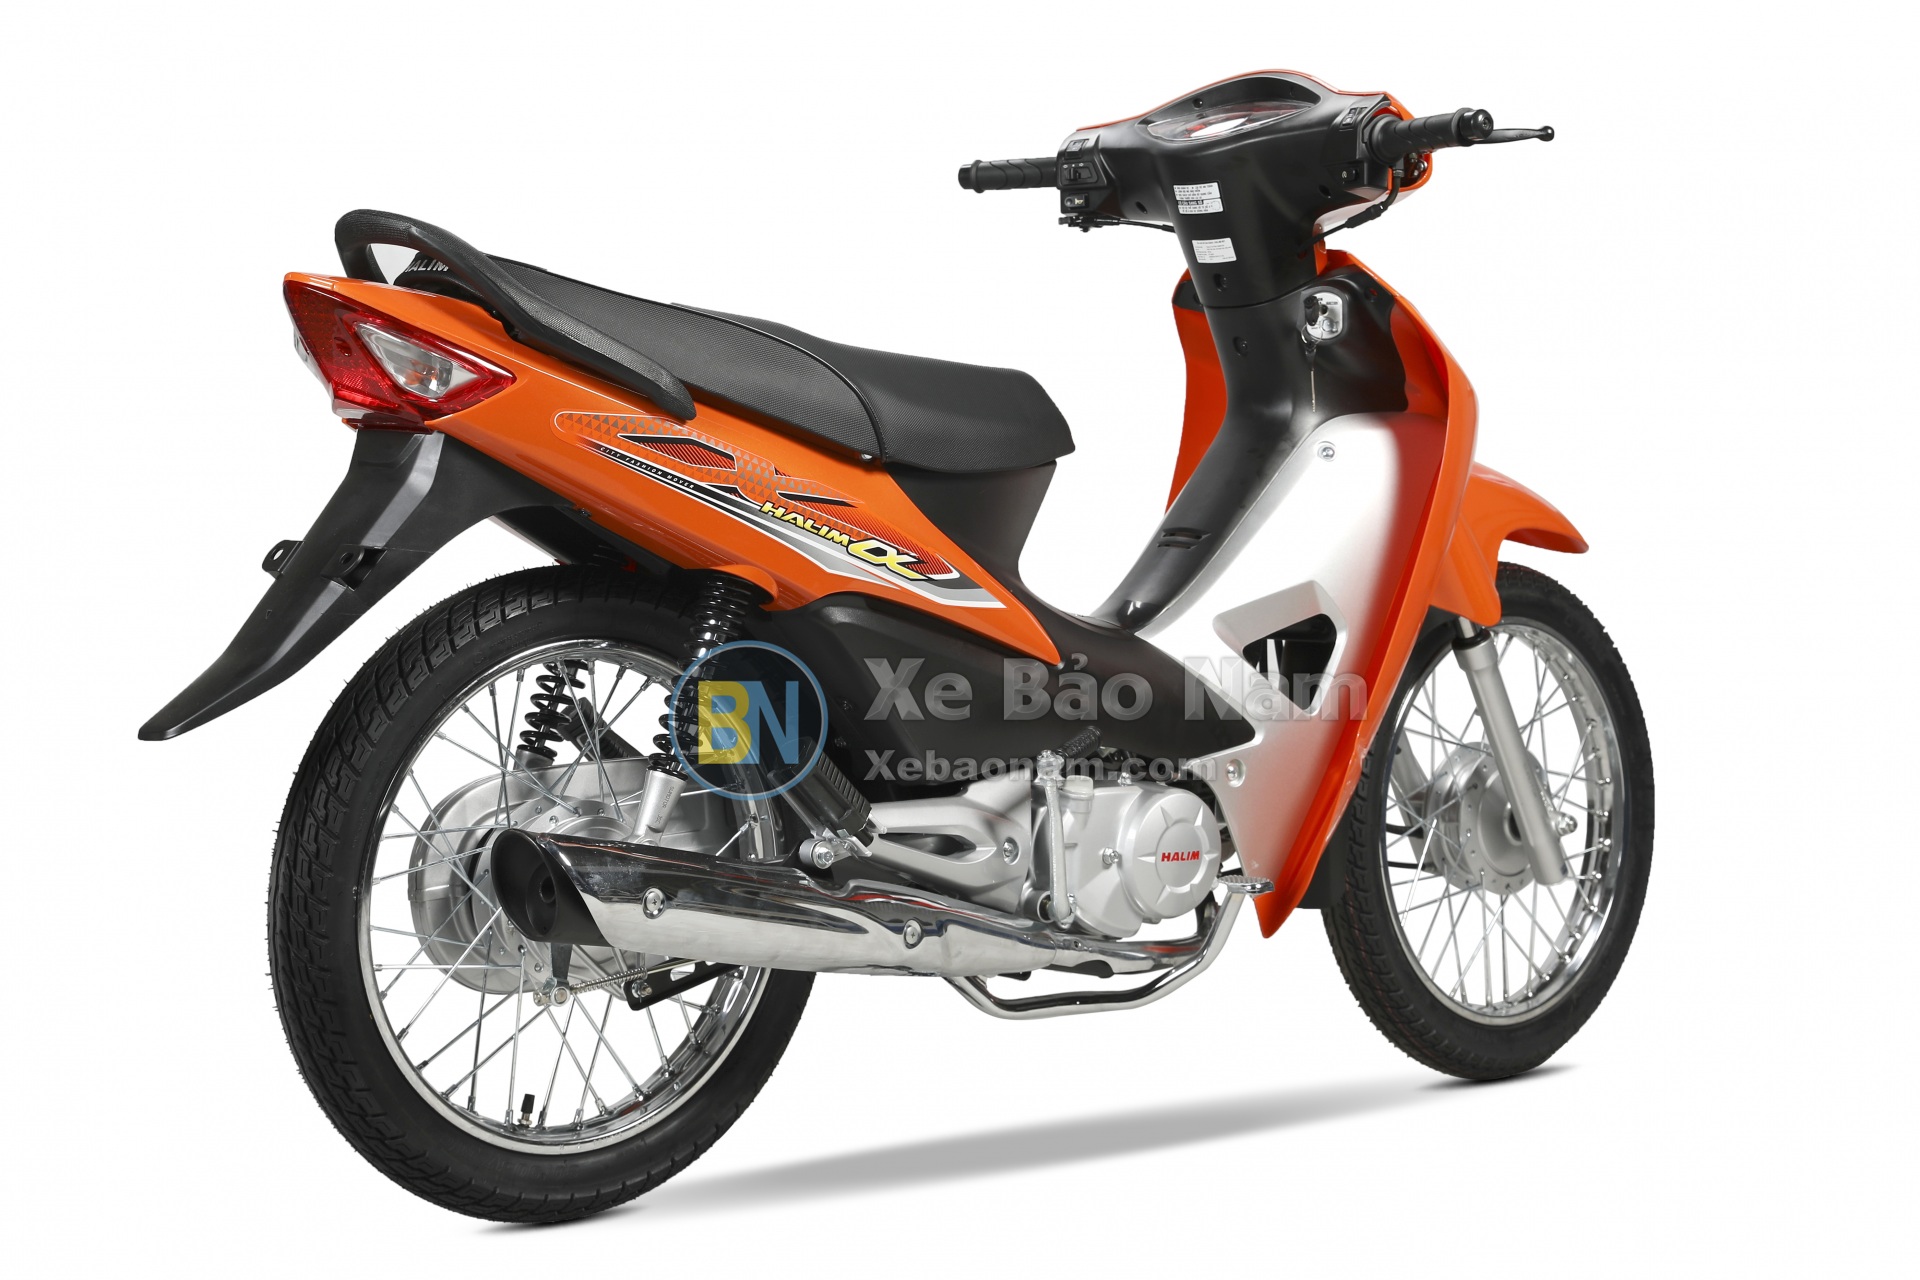 Xe máy Wave 50cc Halim màu cam không cần bằng lái.Giá tốt nhất Việt  Nam.Khuyến mãi nhiều phần quà.Hỗ trợ mua Trả góp.